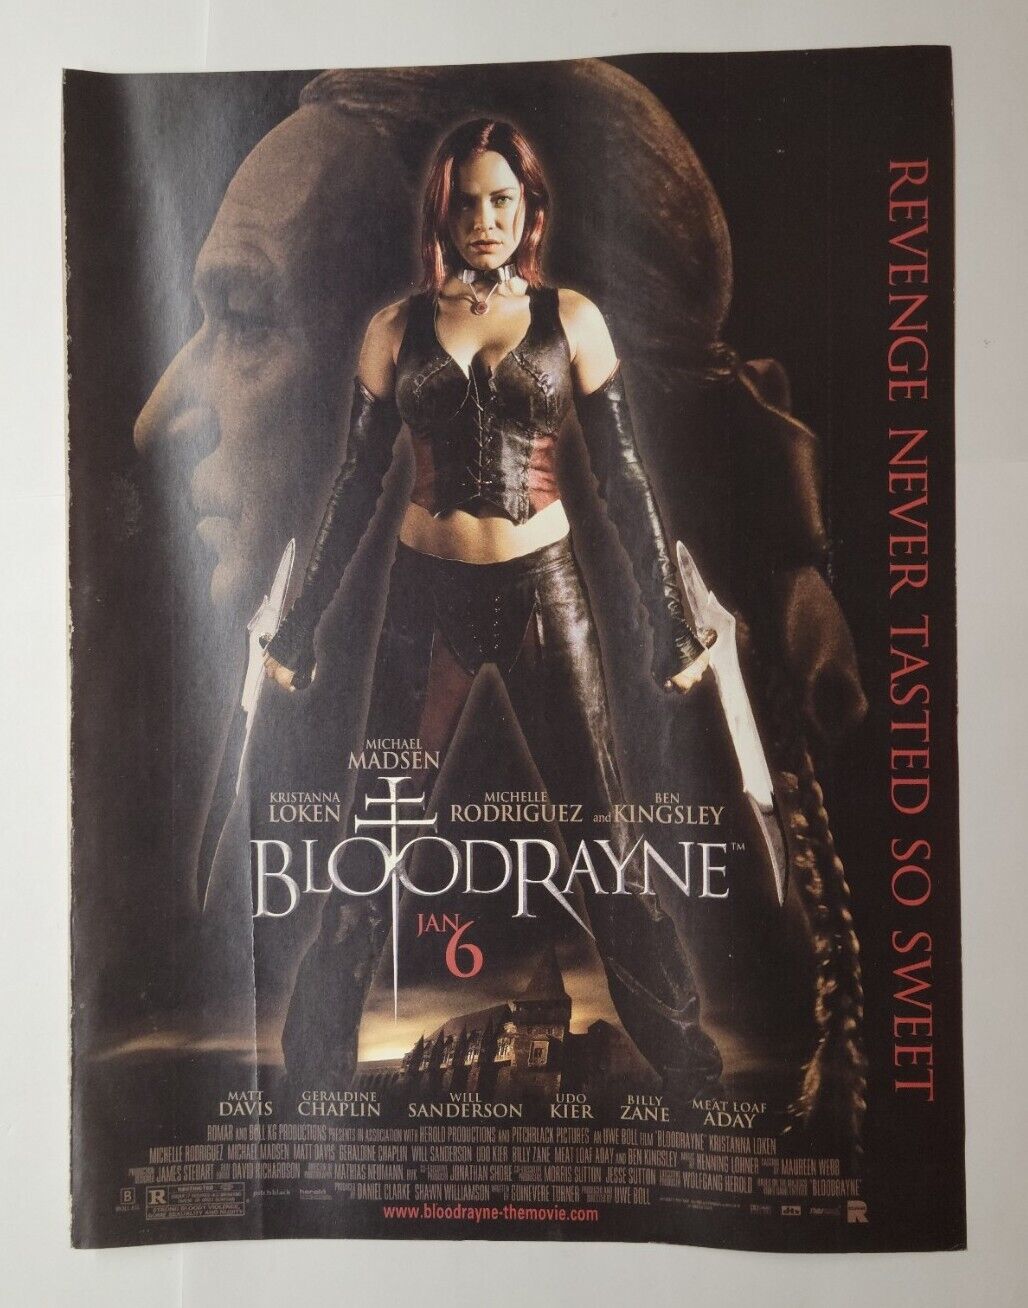 Bloodrayne Movie Premier 2005 Magazine Print Ad Kristanna Lokken